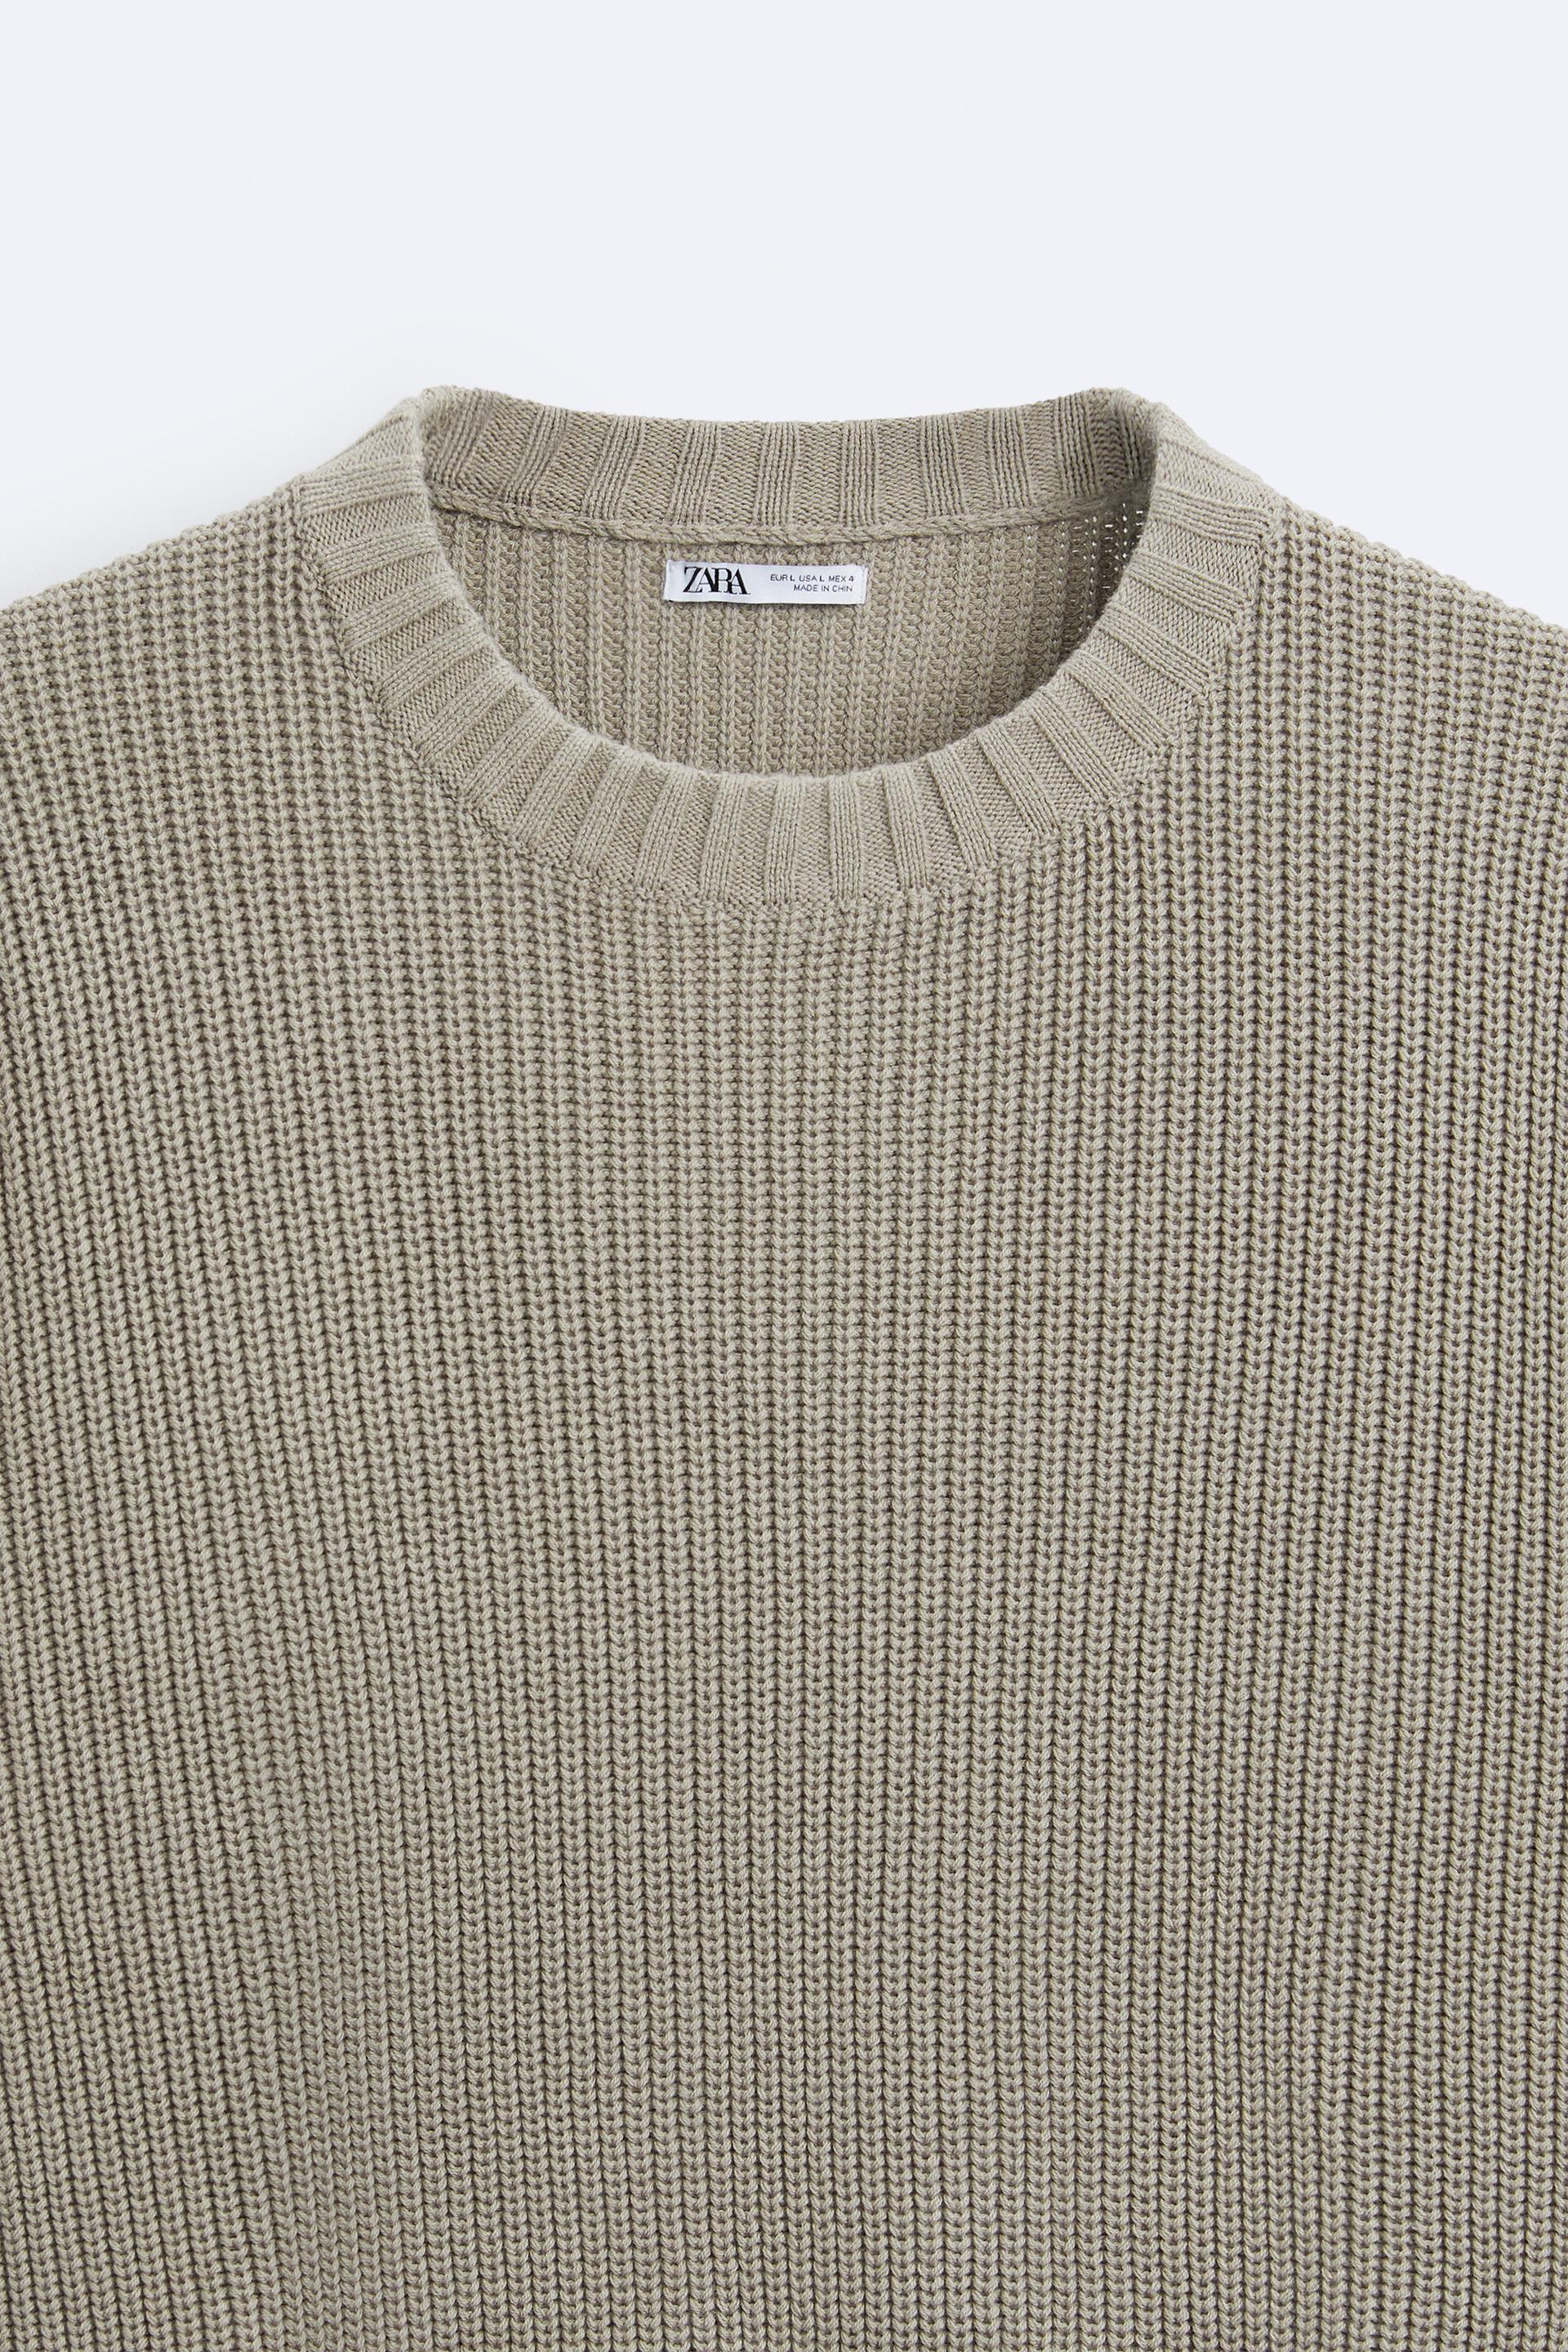 Waffle-knit Cotton Sweater